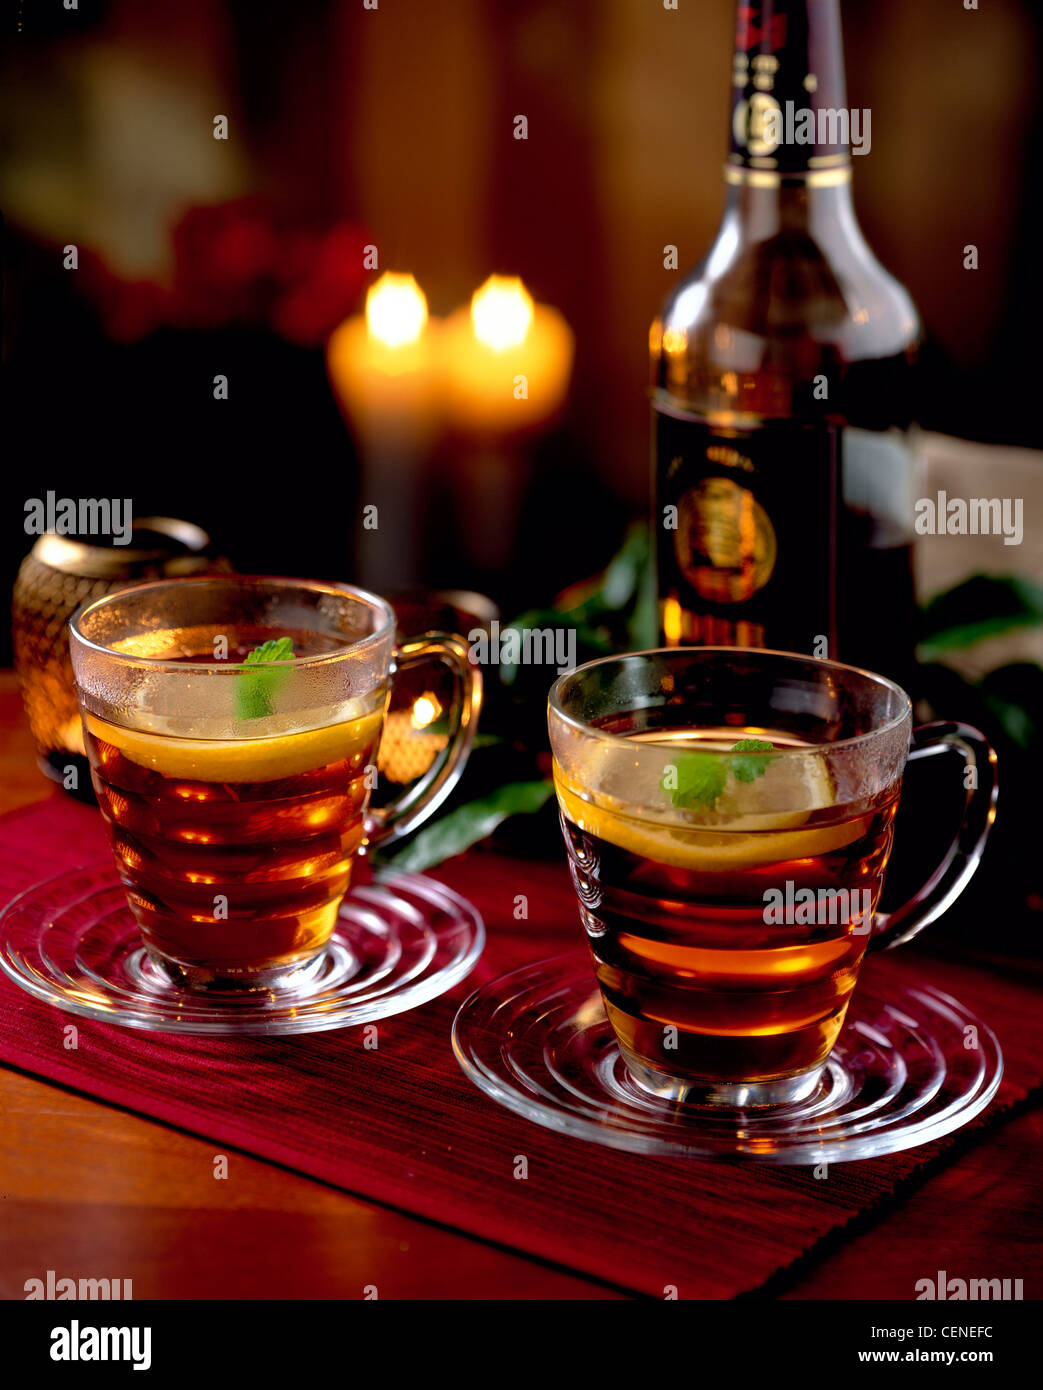 Hot Christmas Drinks Tea Rum Two Glass Cups And Saucers Fruit Tea Rum And Lemon Garnished Slice Of Lemon And Lemon Balm On Stock Photo Alamy